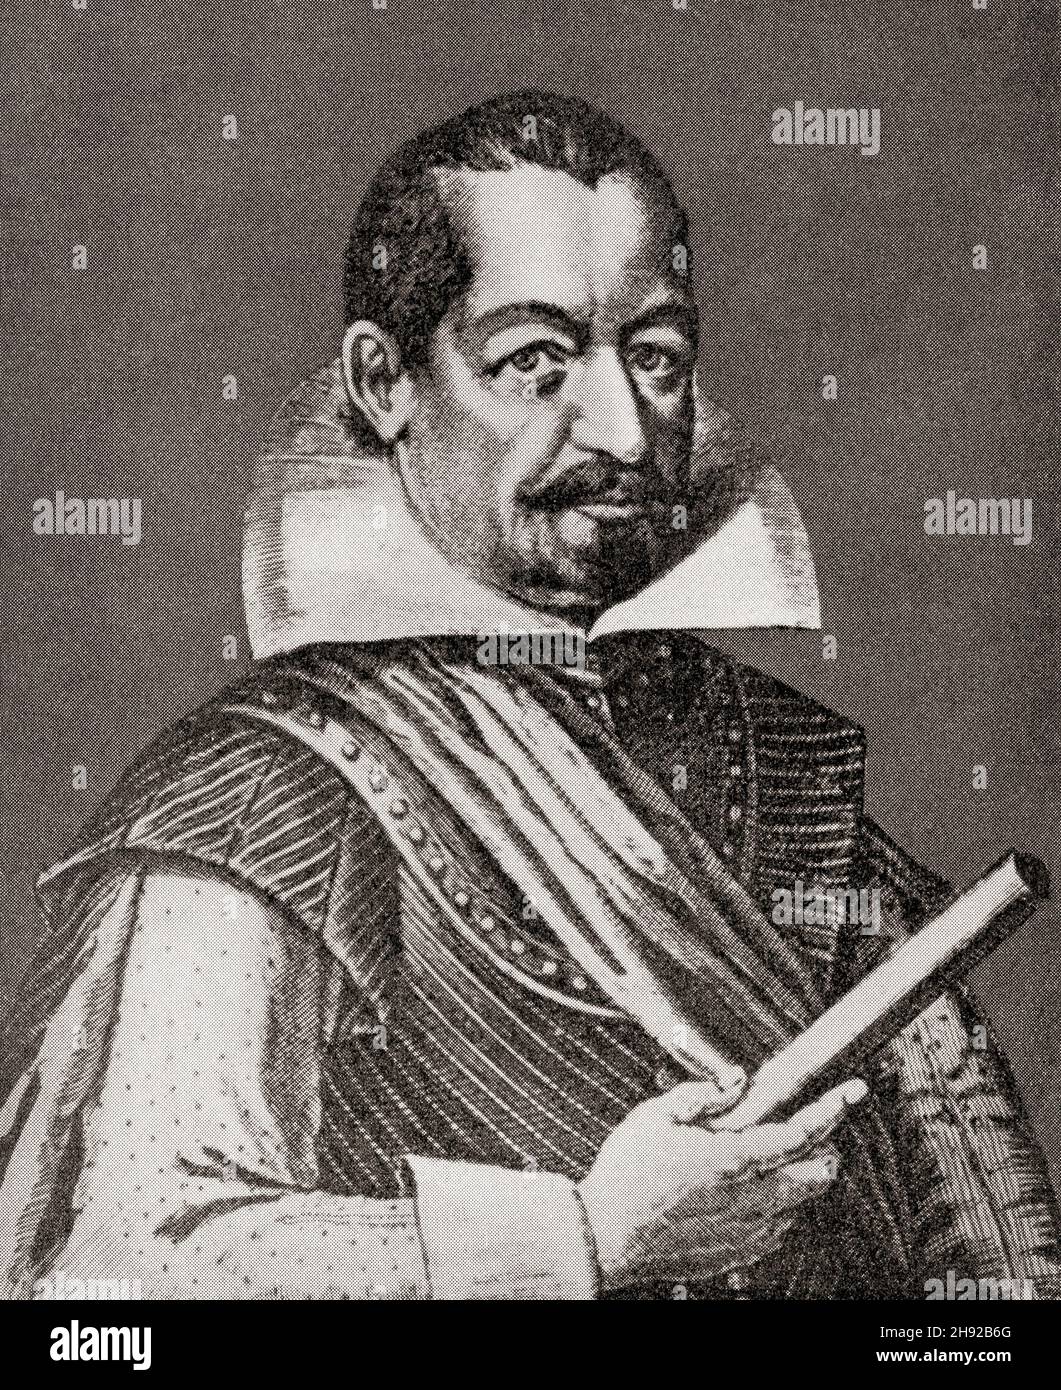 Albrecht Wenzel Eusebius von Wallenstein anche von Waldstein, 1583 – 1634. Capo militare bohemien e politico. Foto Stock